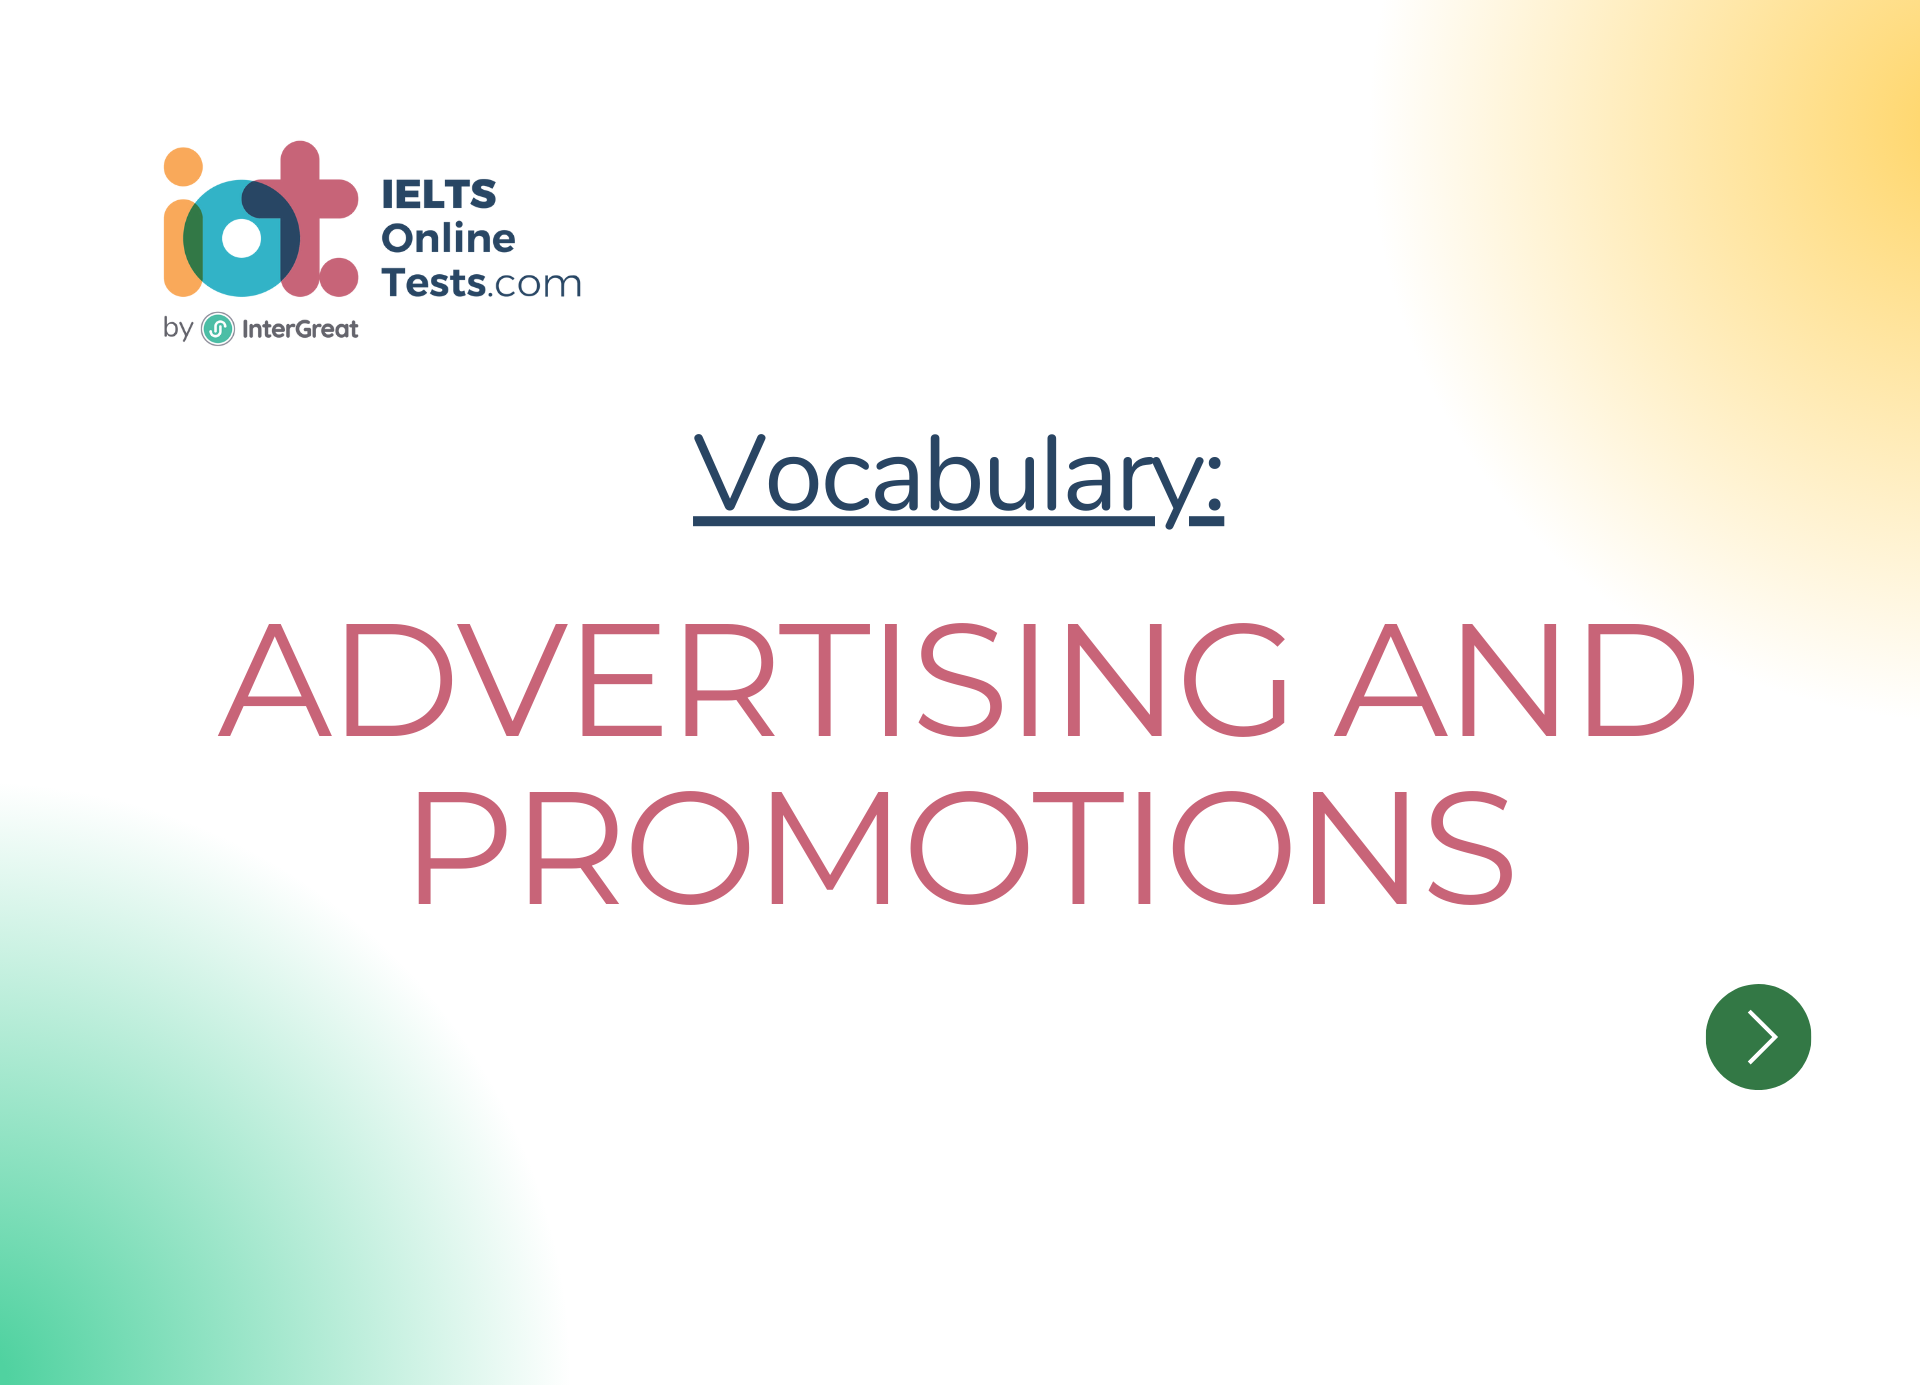 Quảng cáo và khuyến mãi (Advertising and promotions)